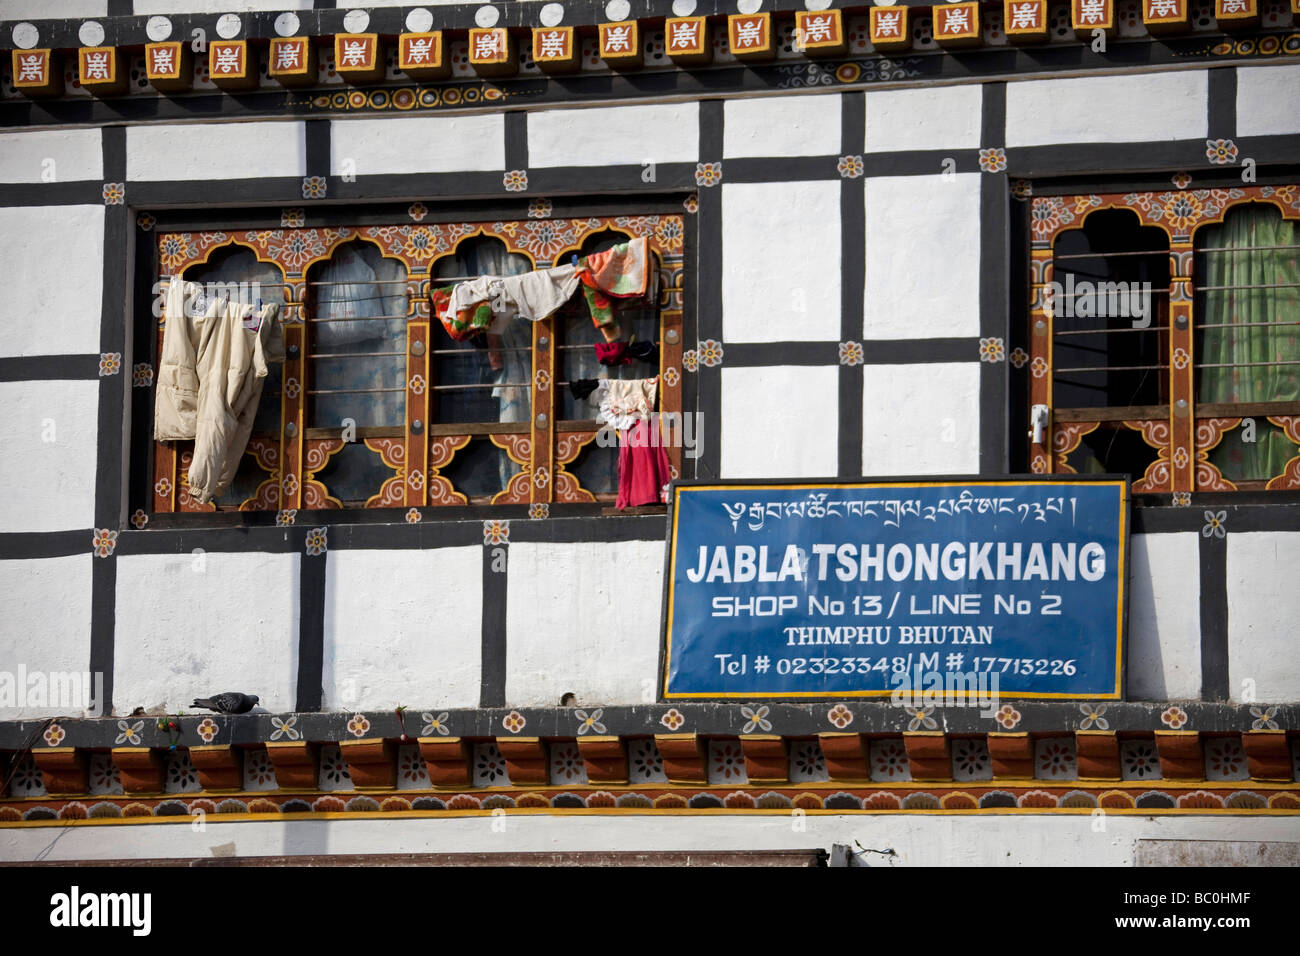 Maison typique des bâtiments et boutiques à Thimphu, Bhoutan. lave-line sur windows. 91364 Bhutan-Thimphu Asie l'horizontale Banque D'Images